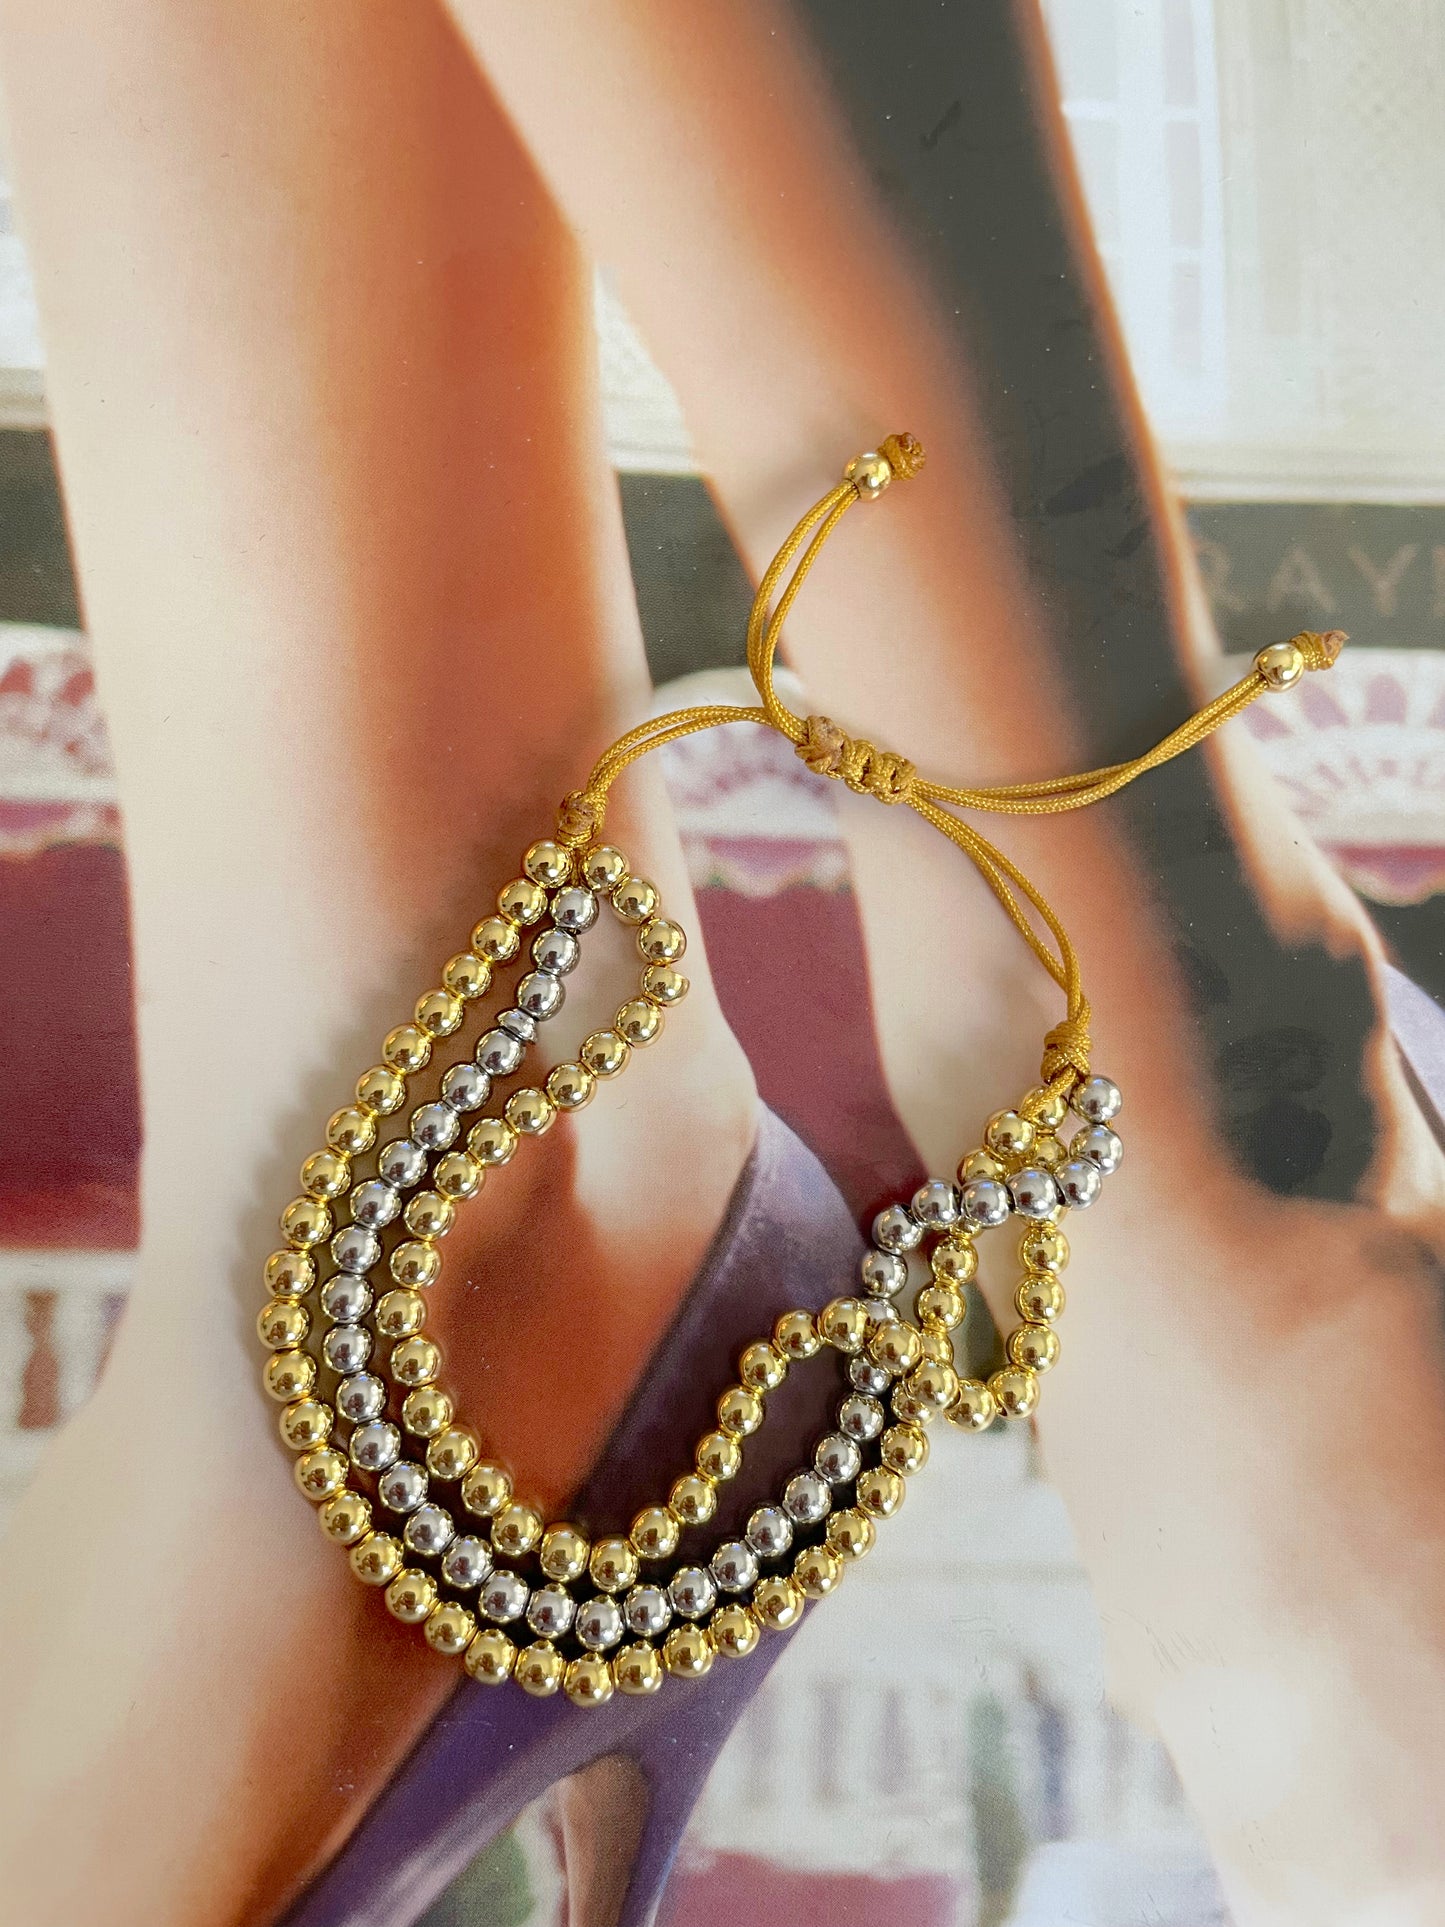 Triple gold beaded bracelet